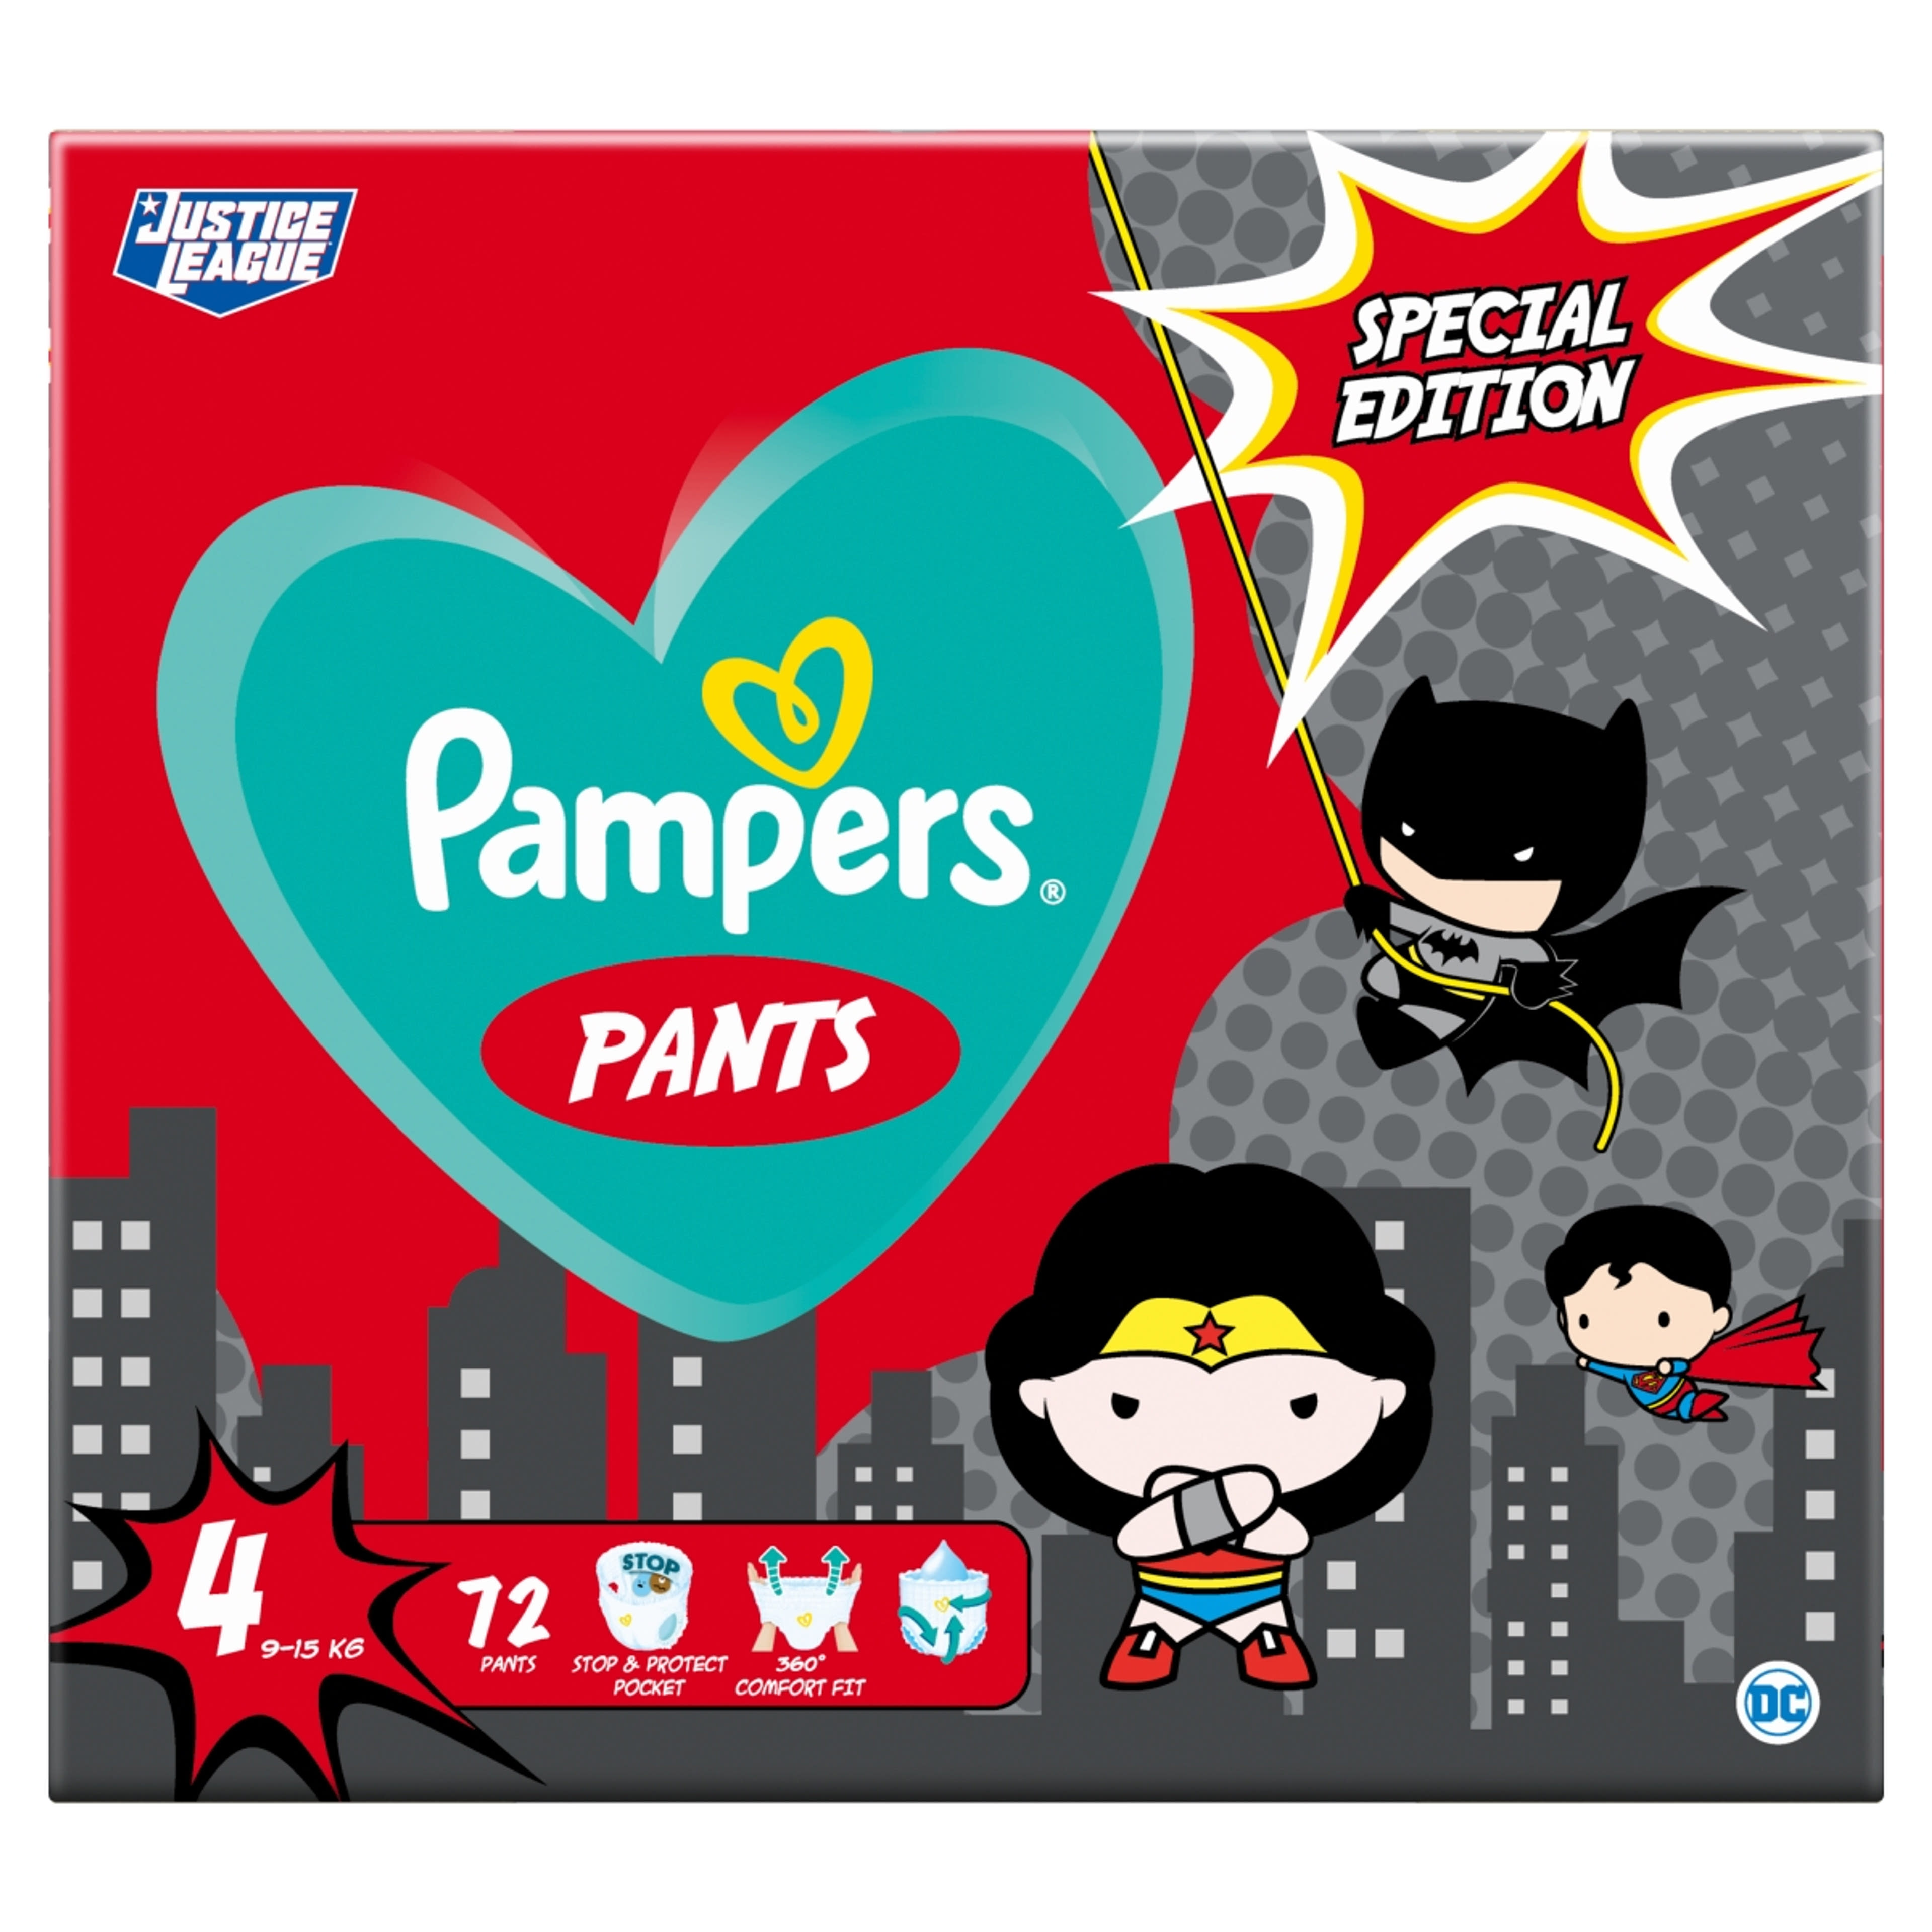 Pampers Pants Giant Pack+ Superheroes 4-es 9-15 kg - 72 db-1